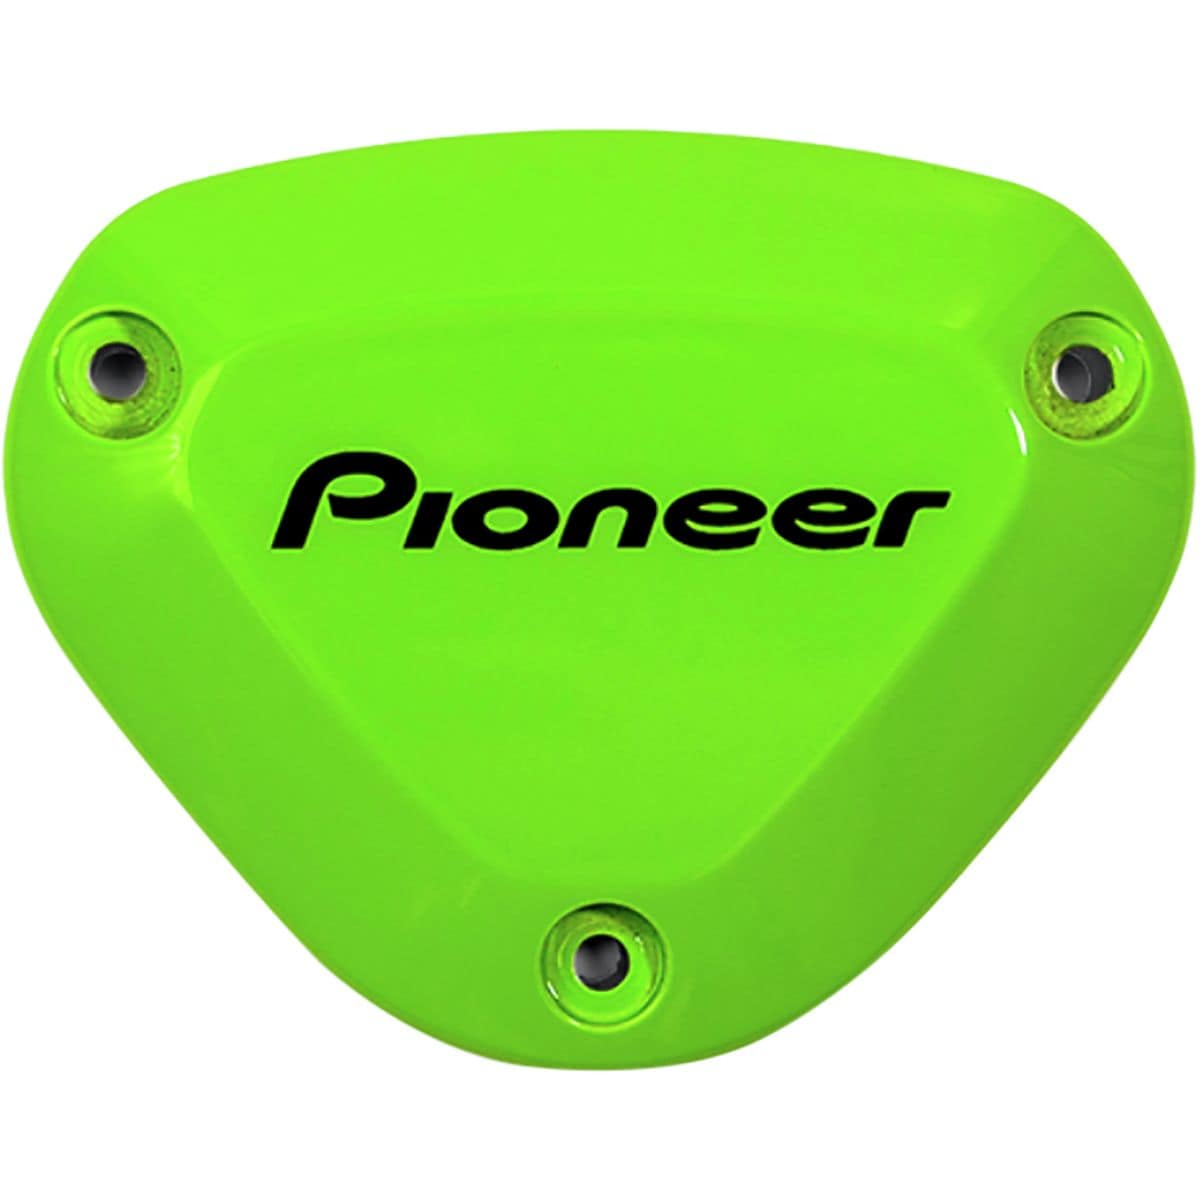 Pioneer Power Meter Color Cap